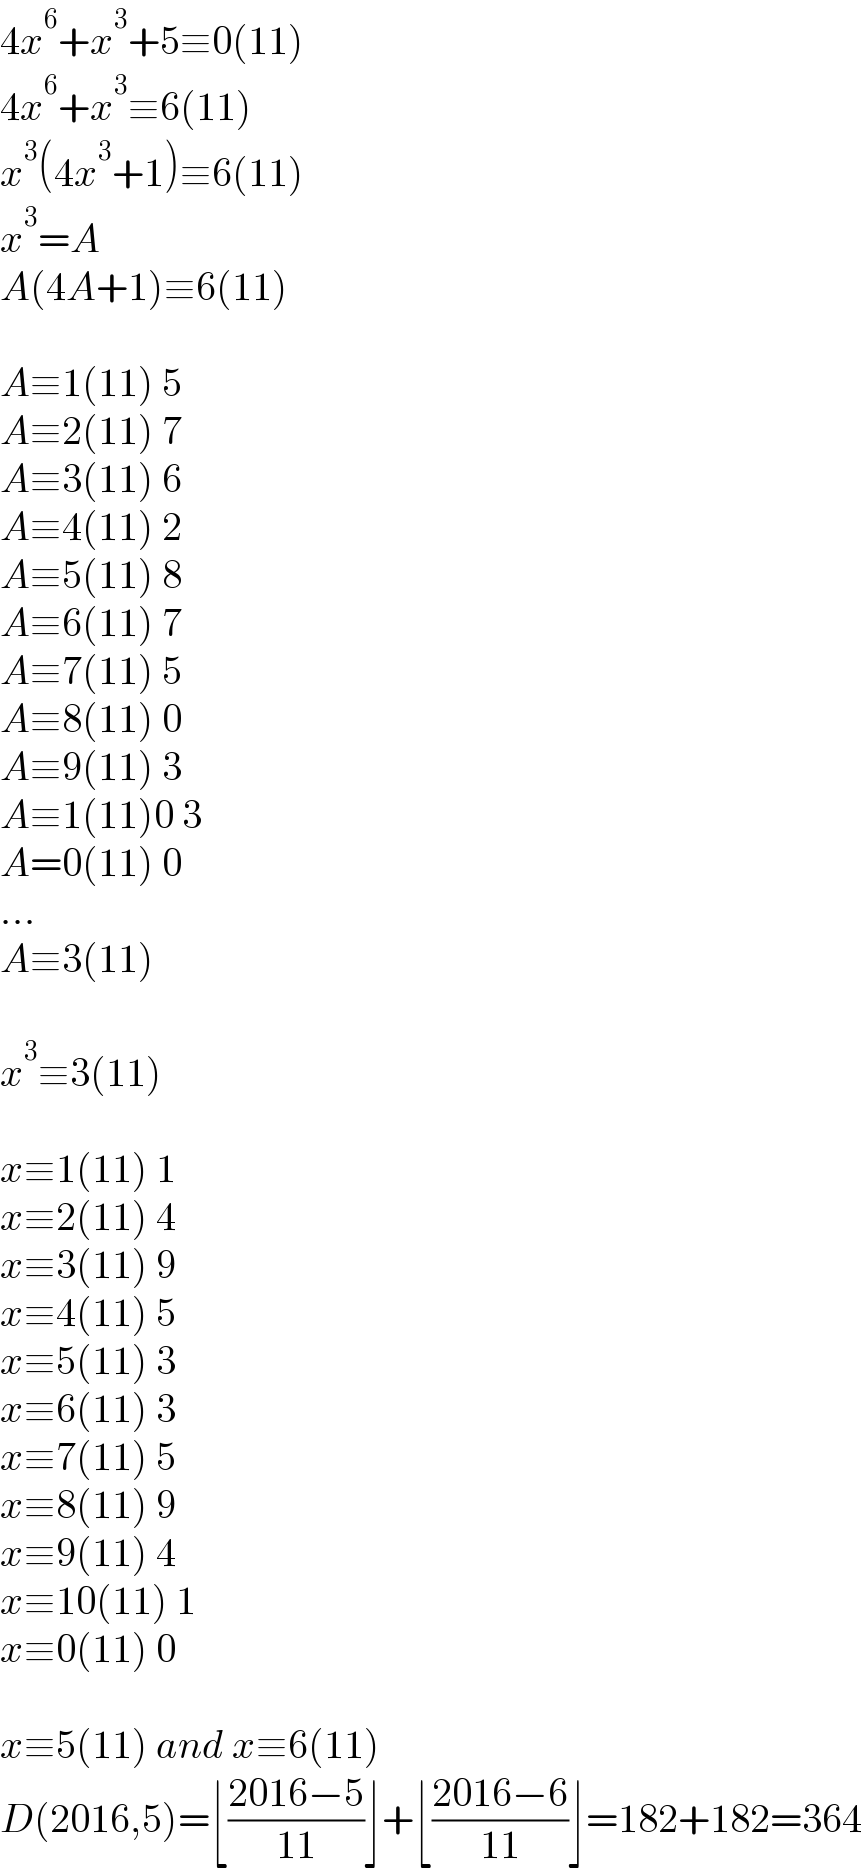 4x^6 +x^3 +5≡0(11)  4x^6 +x^3 ≡6(11)  x^3 (4x^3 +1)≡6(11)  x^3 =A  A(4A+1)≡6(11)    A≡1(11) 5  A≡2(11) 7  A≡3(11) 6  A≡4(11) 2  A≡5(11) 8  A≡6(11) 7  A≡7(11) 5  A≡8(11) 0  A≡9(11) 3  A≡1(11)0 3  A=0(11) 0  ...  A≡3(11)    x^3 ≡3(11)    x≡1(11) 1  x≡2(11) 4  x≡3(11) 9  x≡4(11) 5  x≡5(11) 3  x≡6(11) 3  x≡7(11) 5  x≡8(11) 9  x≡9(11) 4  x≡10(11) 1  x≡0(11) 0    x≡5(11) and x≡6(11)  D(2016,5)=⌊((2016−5)/(11))⌋+⌊((2016−6)/(11))⌋=182+182=364  